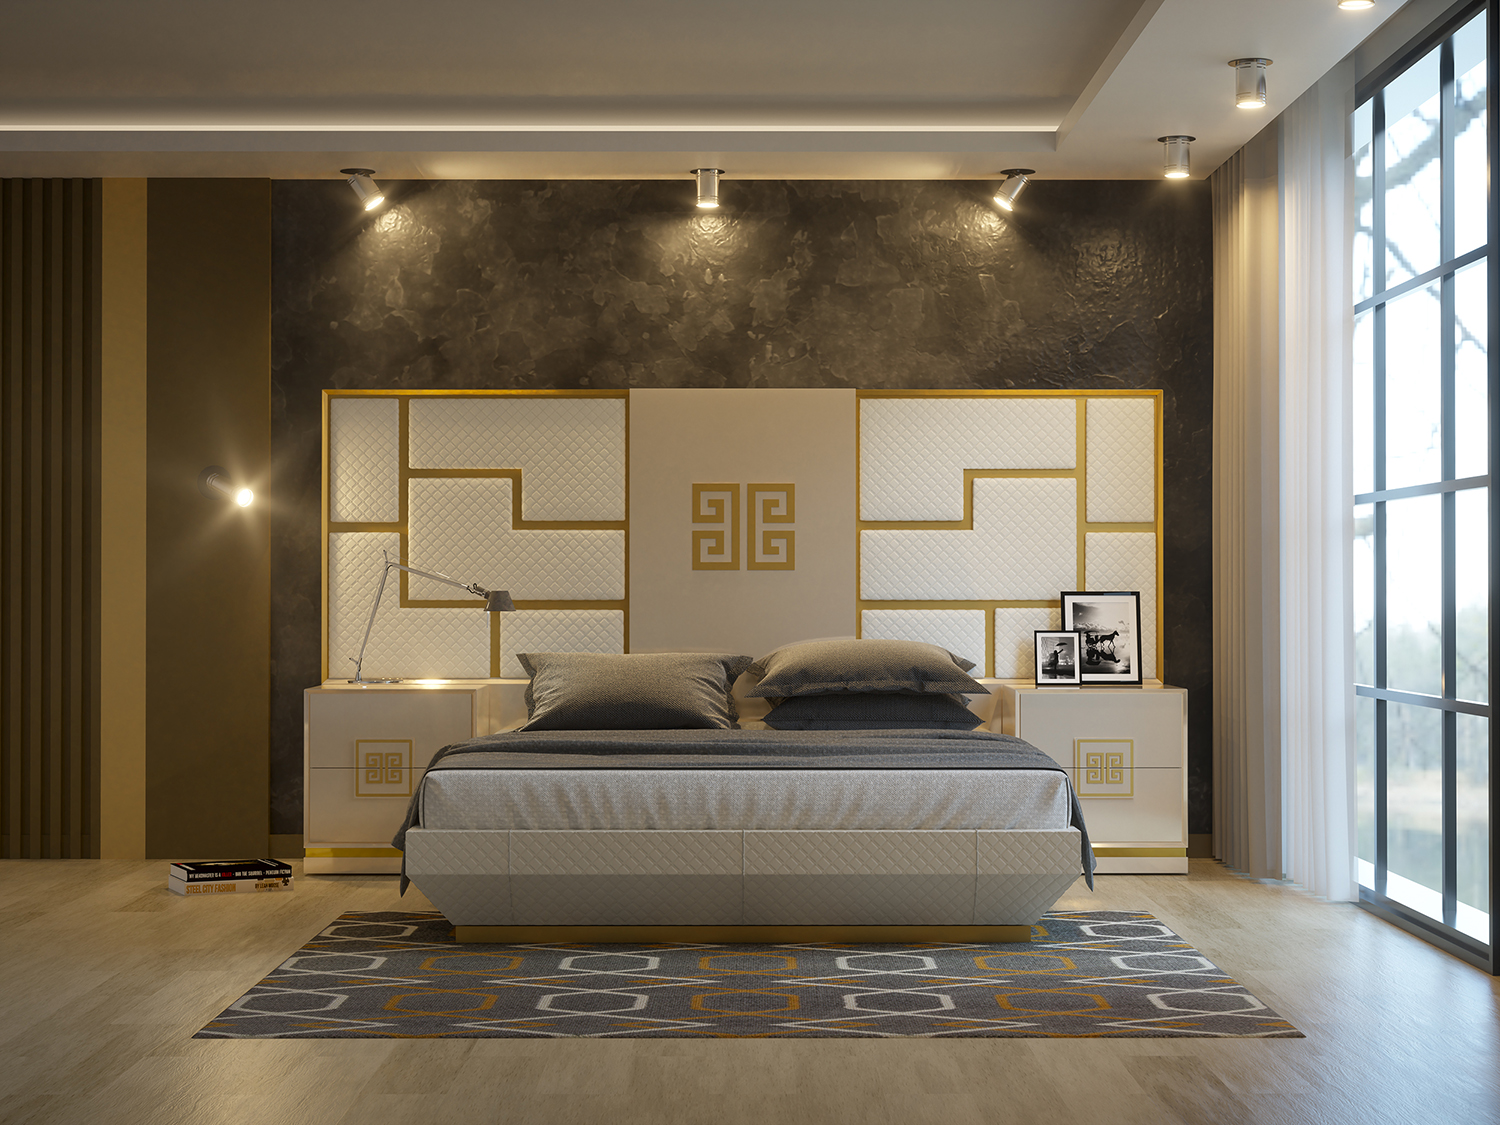 Dormitorio moderno 003 - MuebleBello